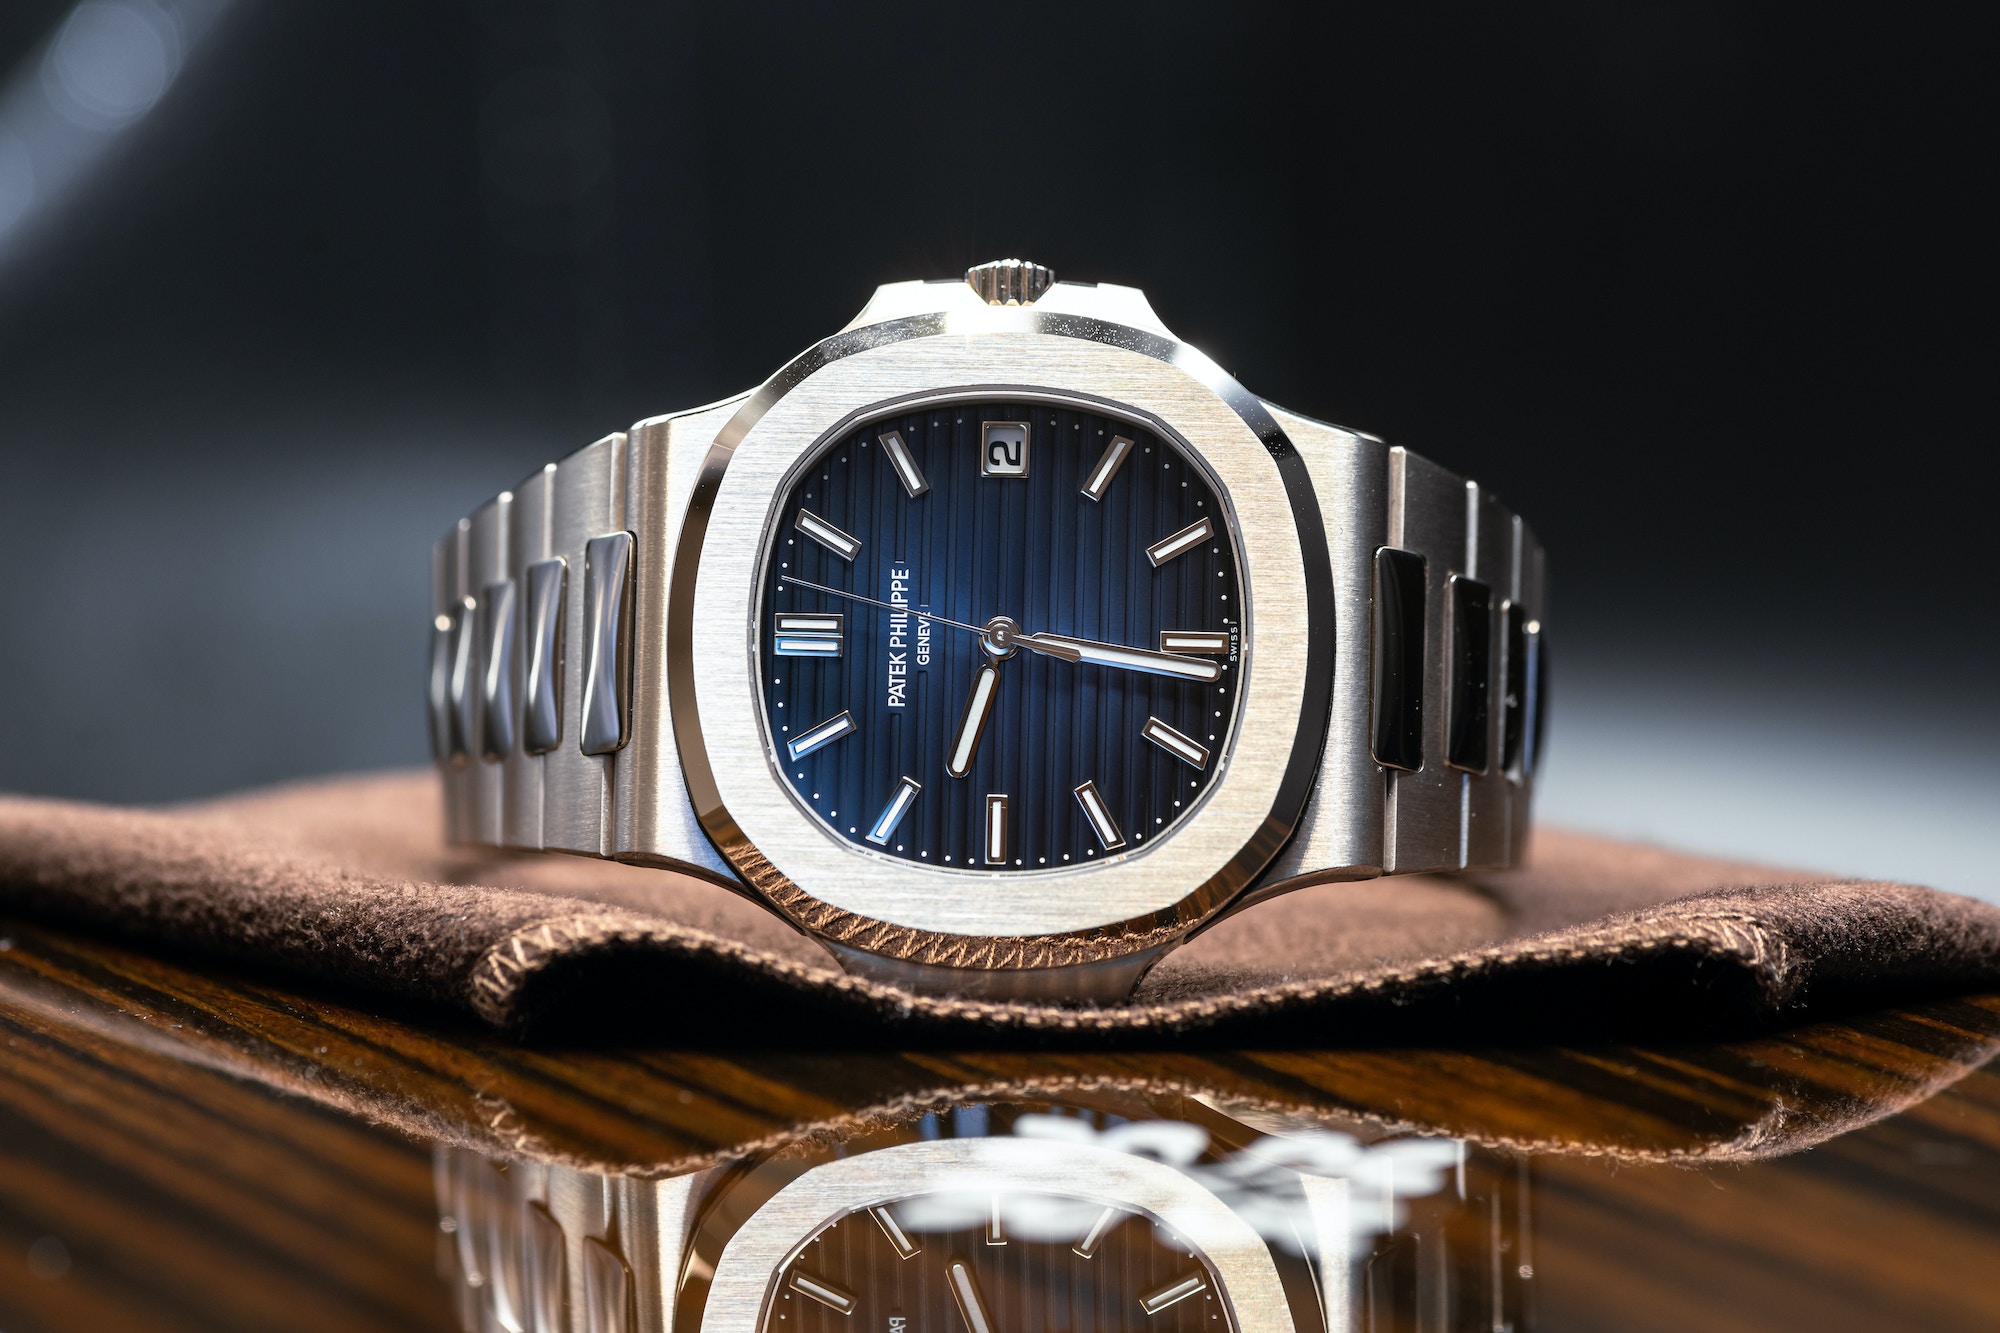 Best Price for Patek Philippe Nautilus Watches